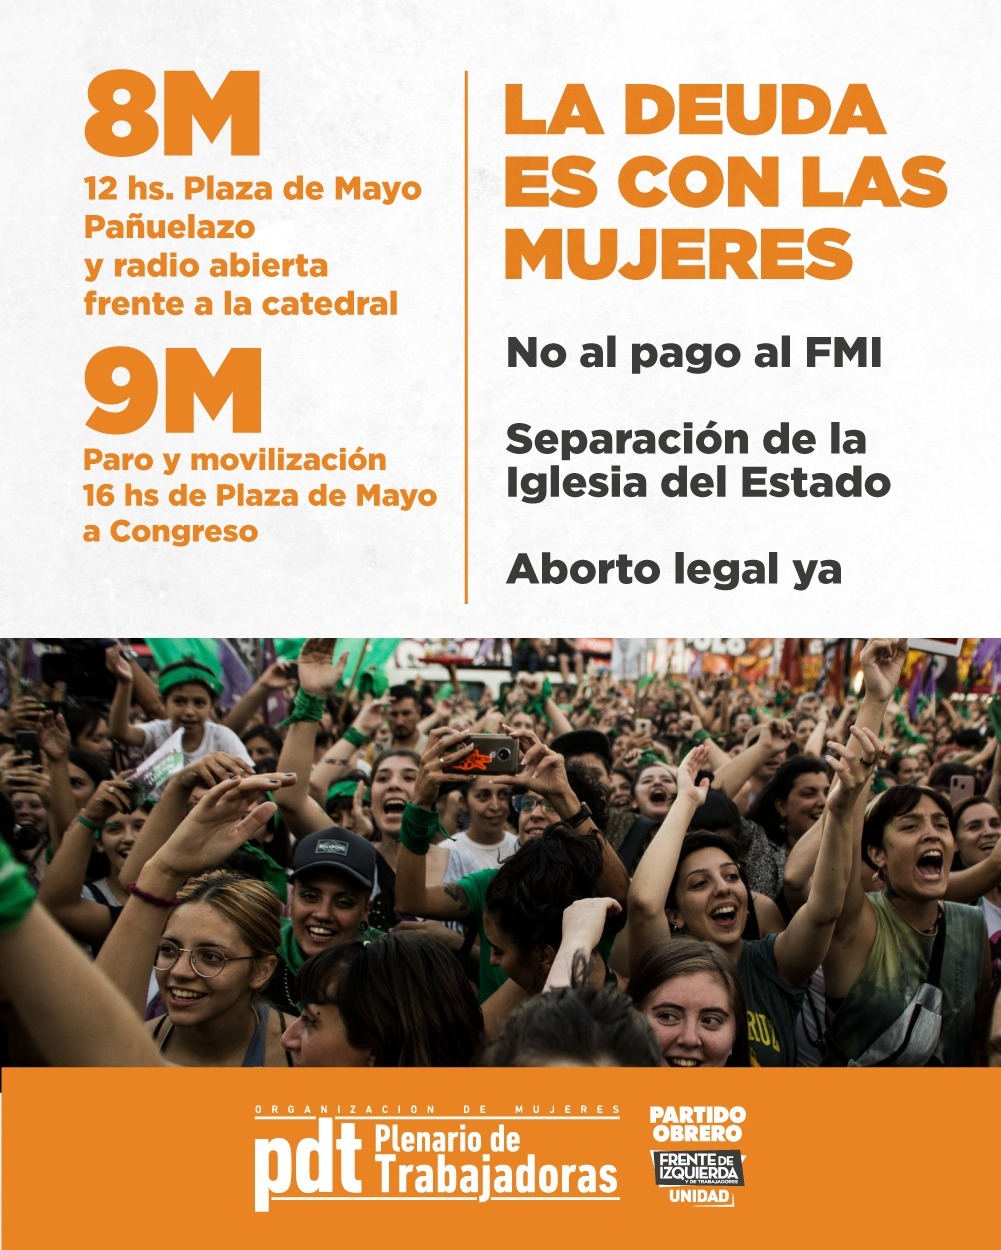 9M: 17h, movilización de Plaza de Mayo a Congreso